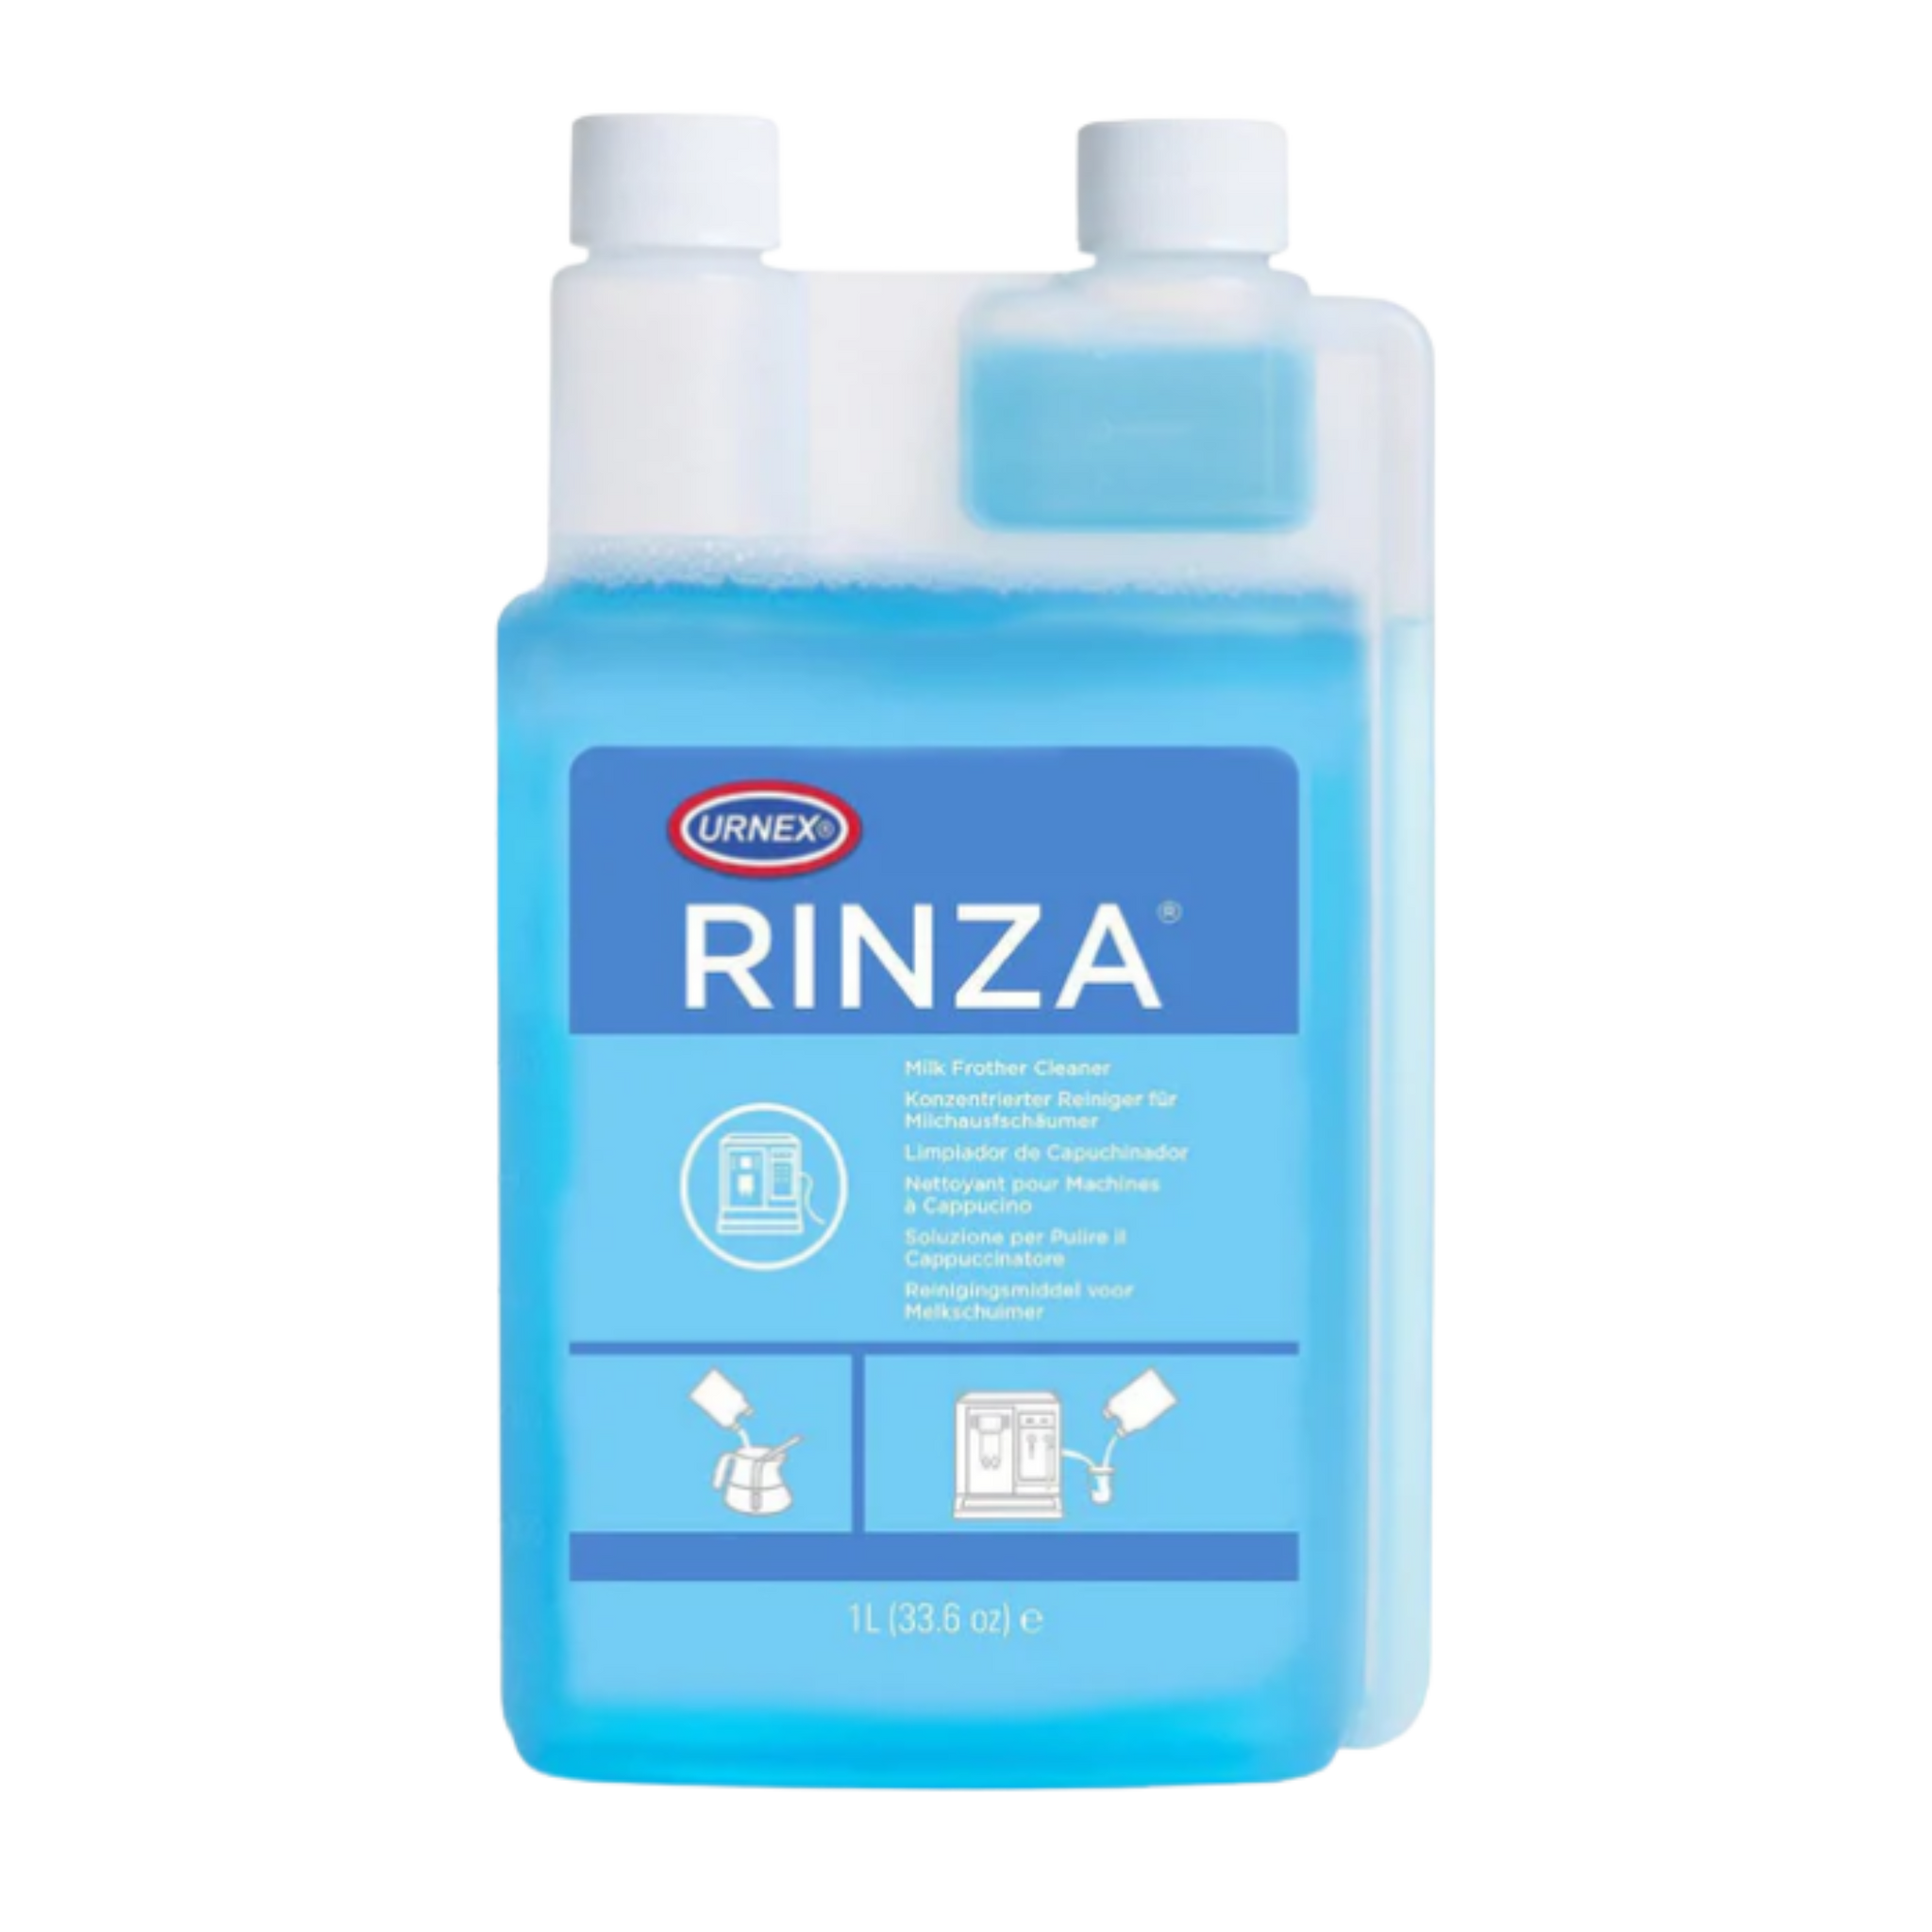 Urnex - Rinza Milk System Cleaner (Liquid)